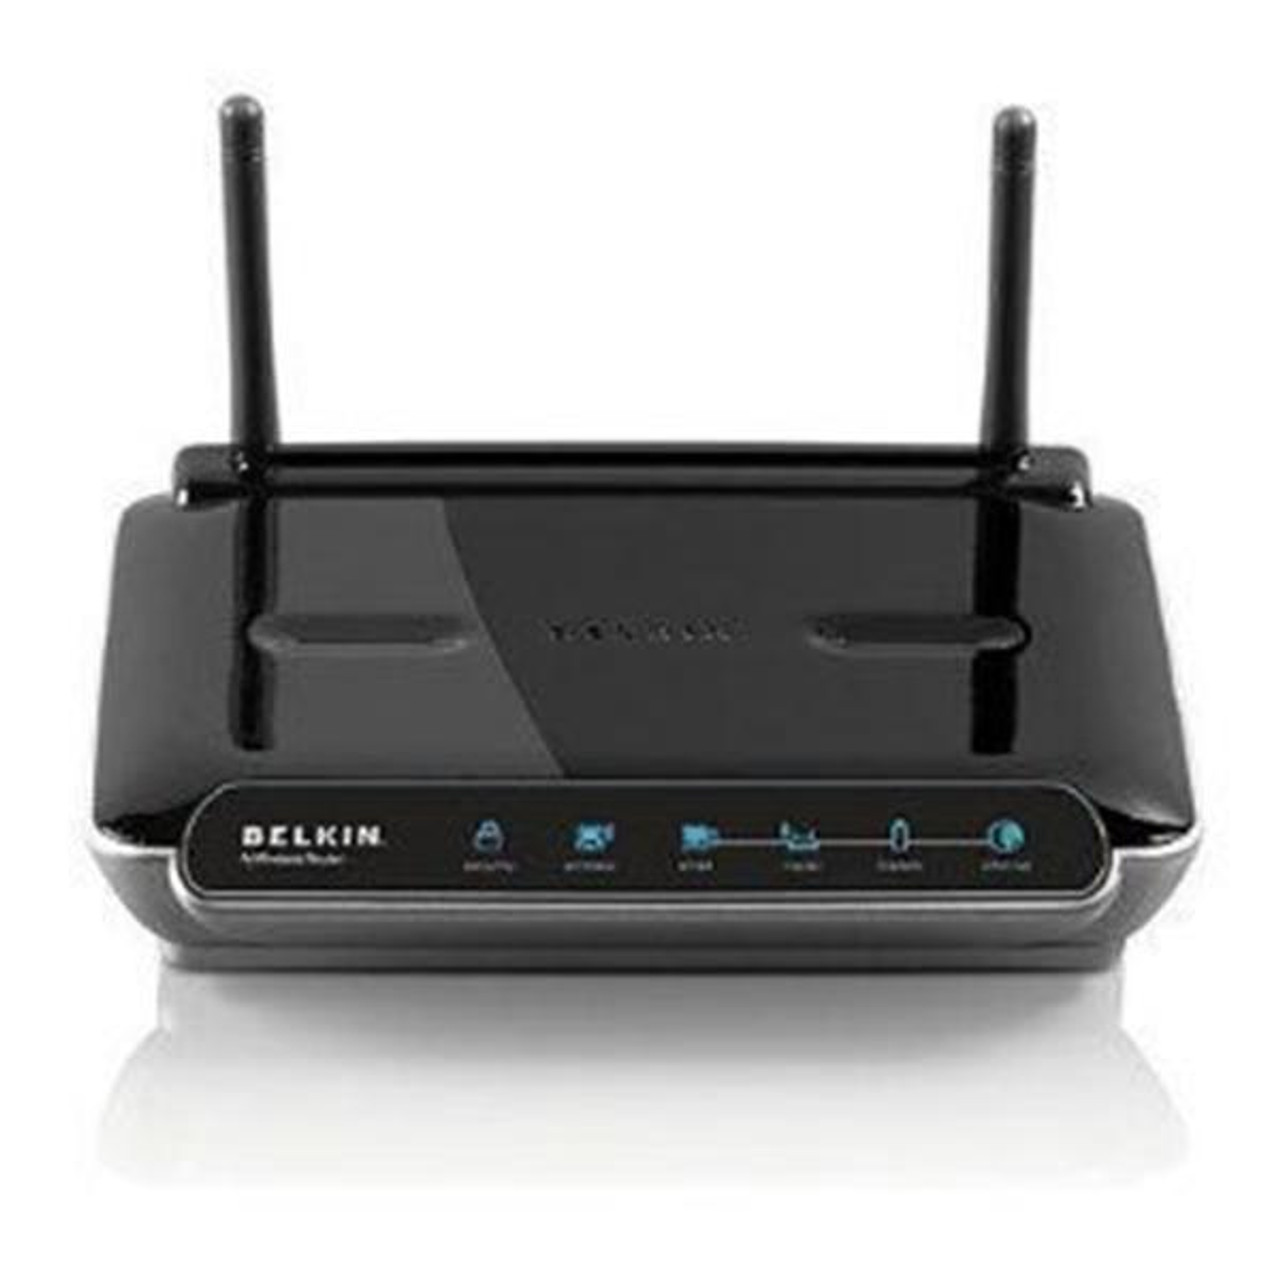 F5D82334 Belkin N Wireless N Router (Refurbished)